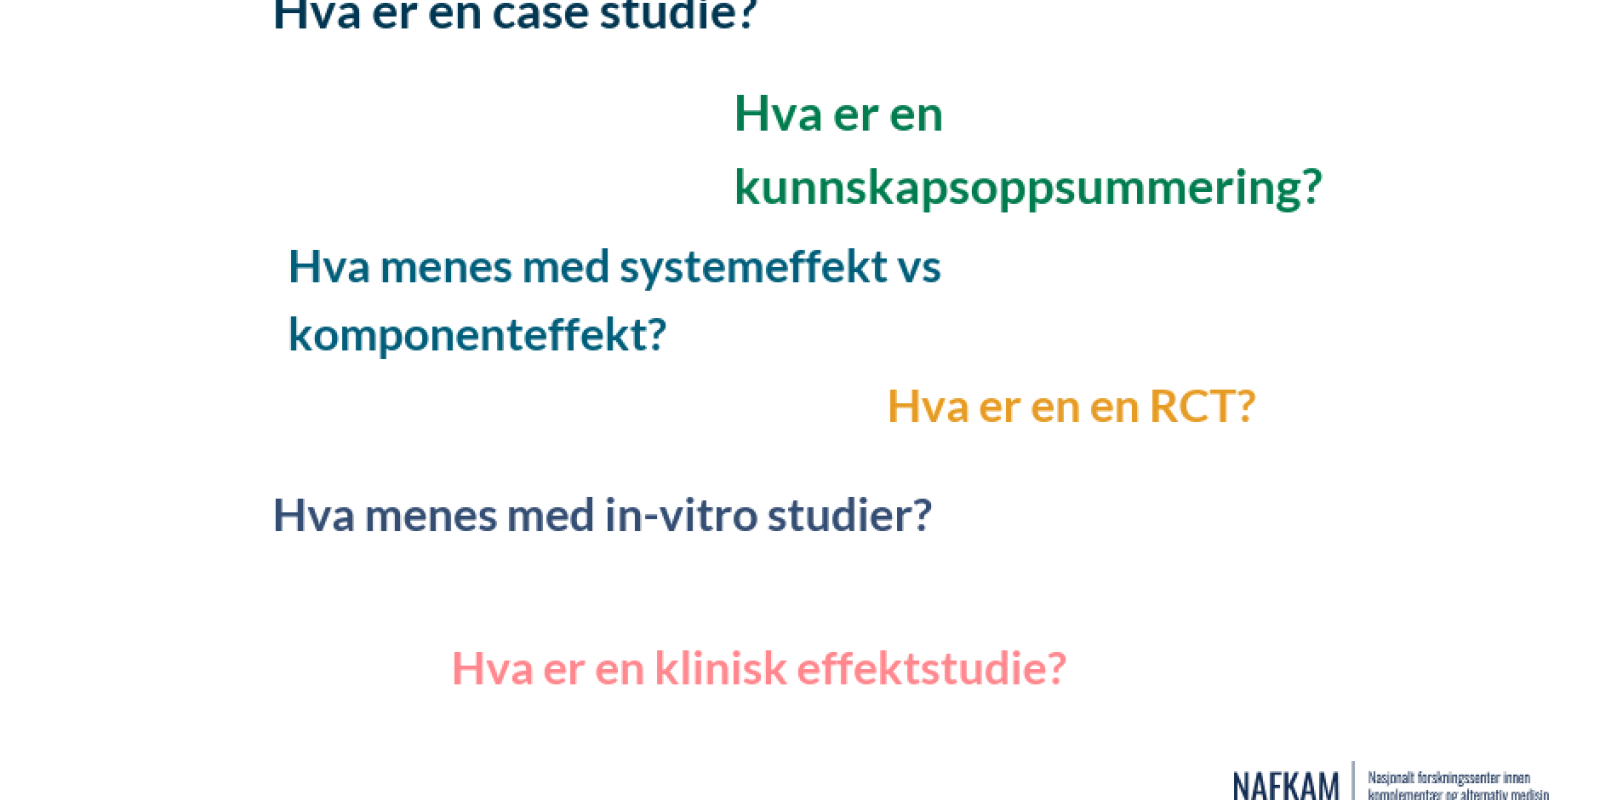 Hva er en case studie, en RCT og in-vitro studier? Illustrasjon av Tine Lilleård Bergli 2020.